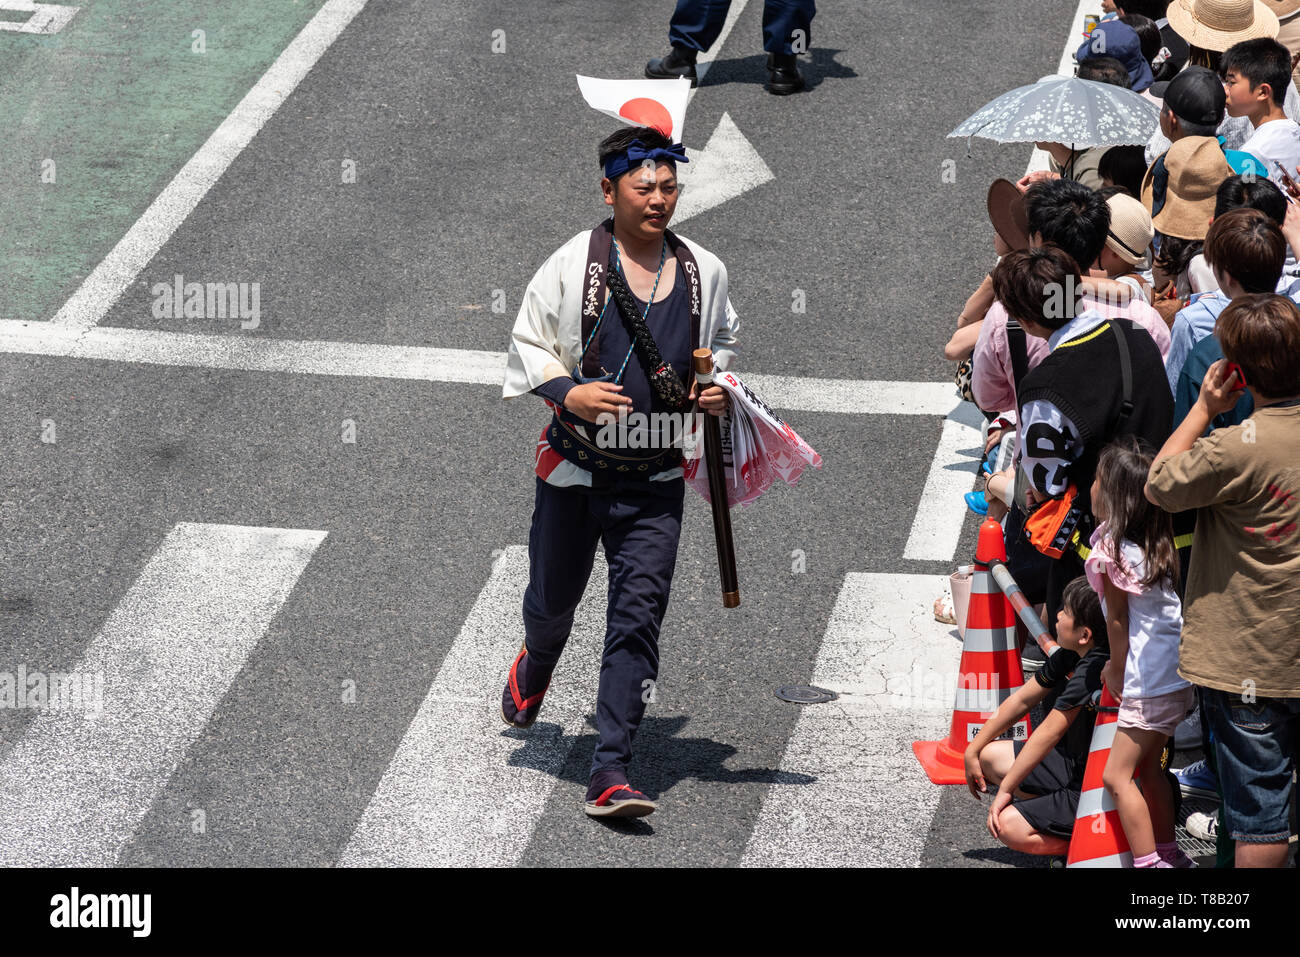 Volks, Japan - 5. Mai, 2019: Die Menschen in traditionellen Kostümen Parade durch die Straße während einer Parade neue imperiale Ära zu feiern sind Iwa' Stockfoto